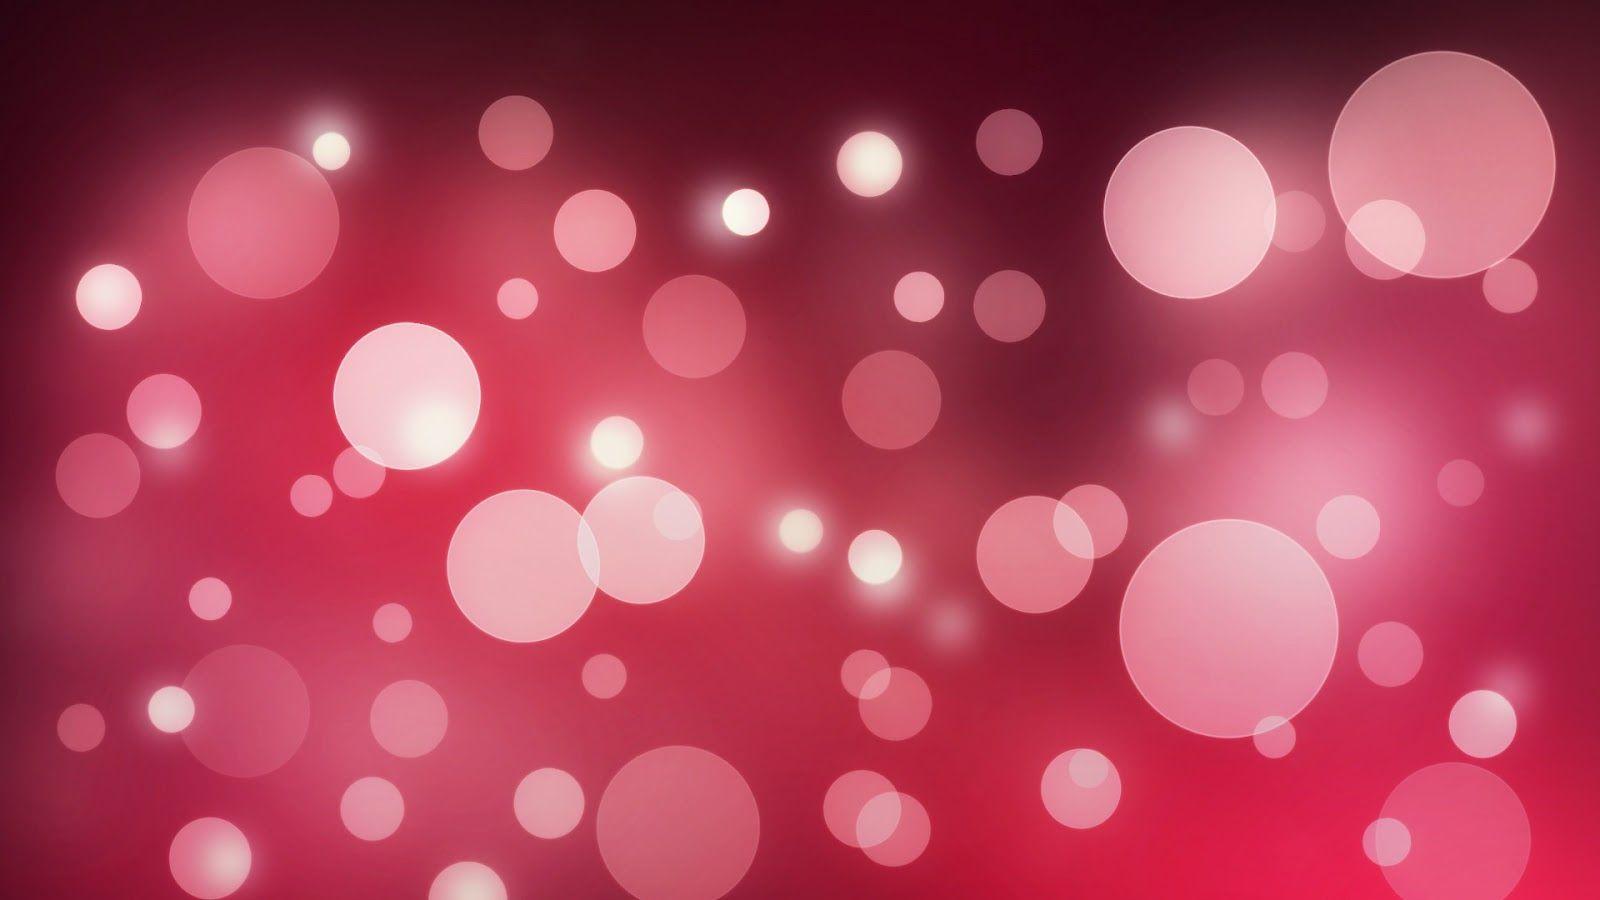 Desktop Wallpaper: Pink Abstract Light Circles Desktop Wallpaper